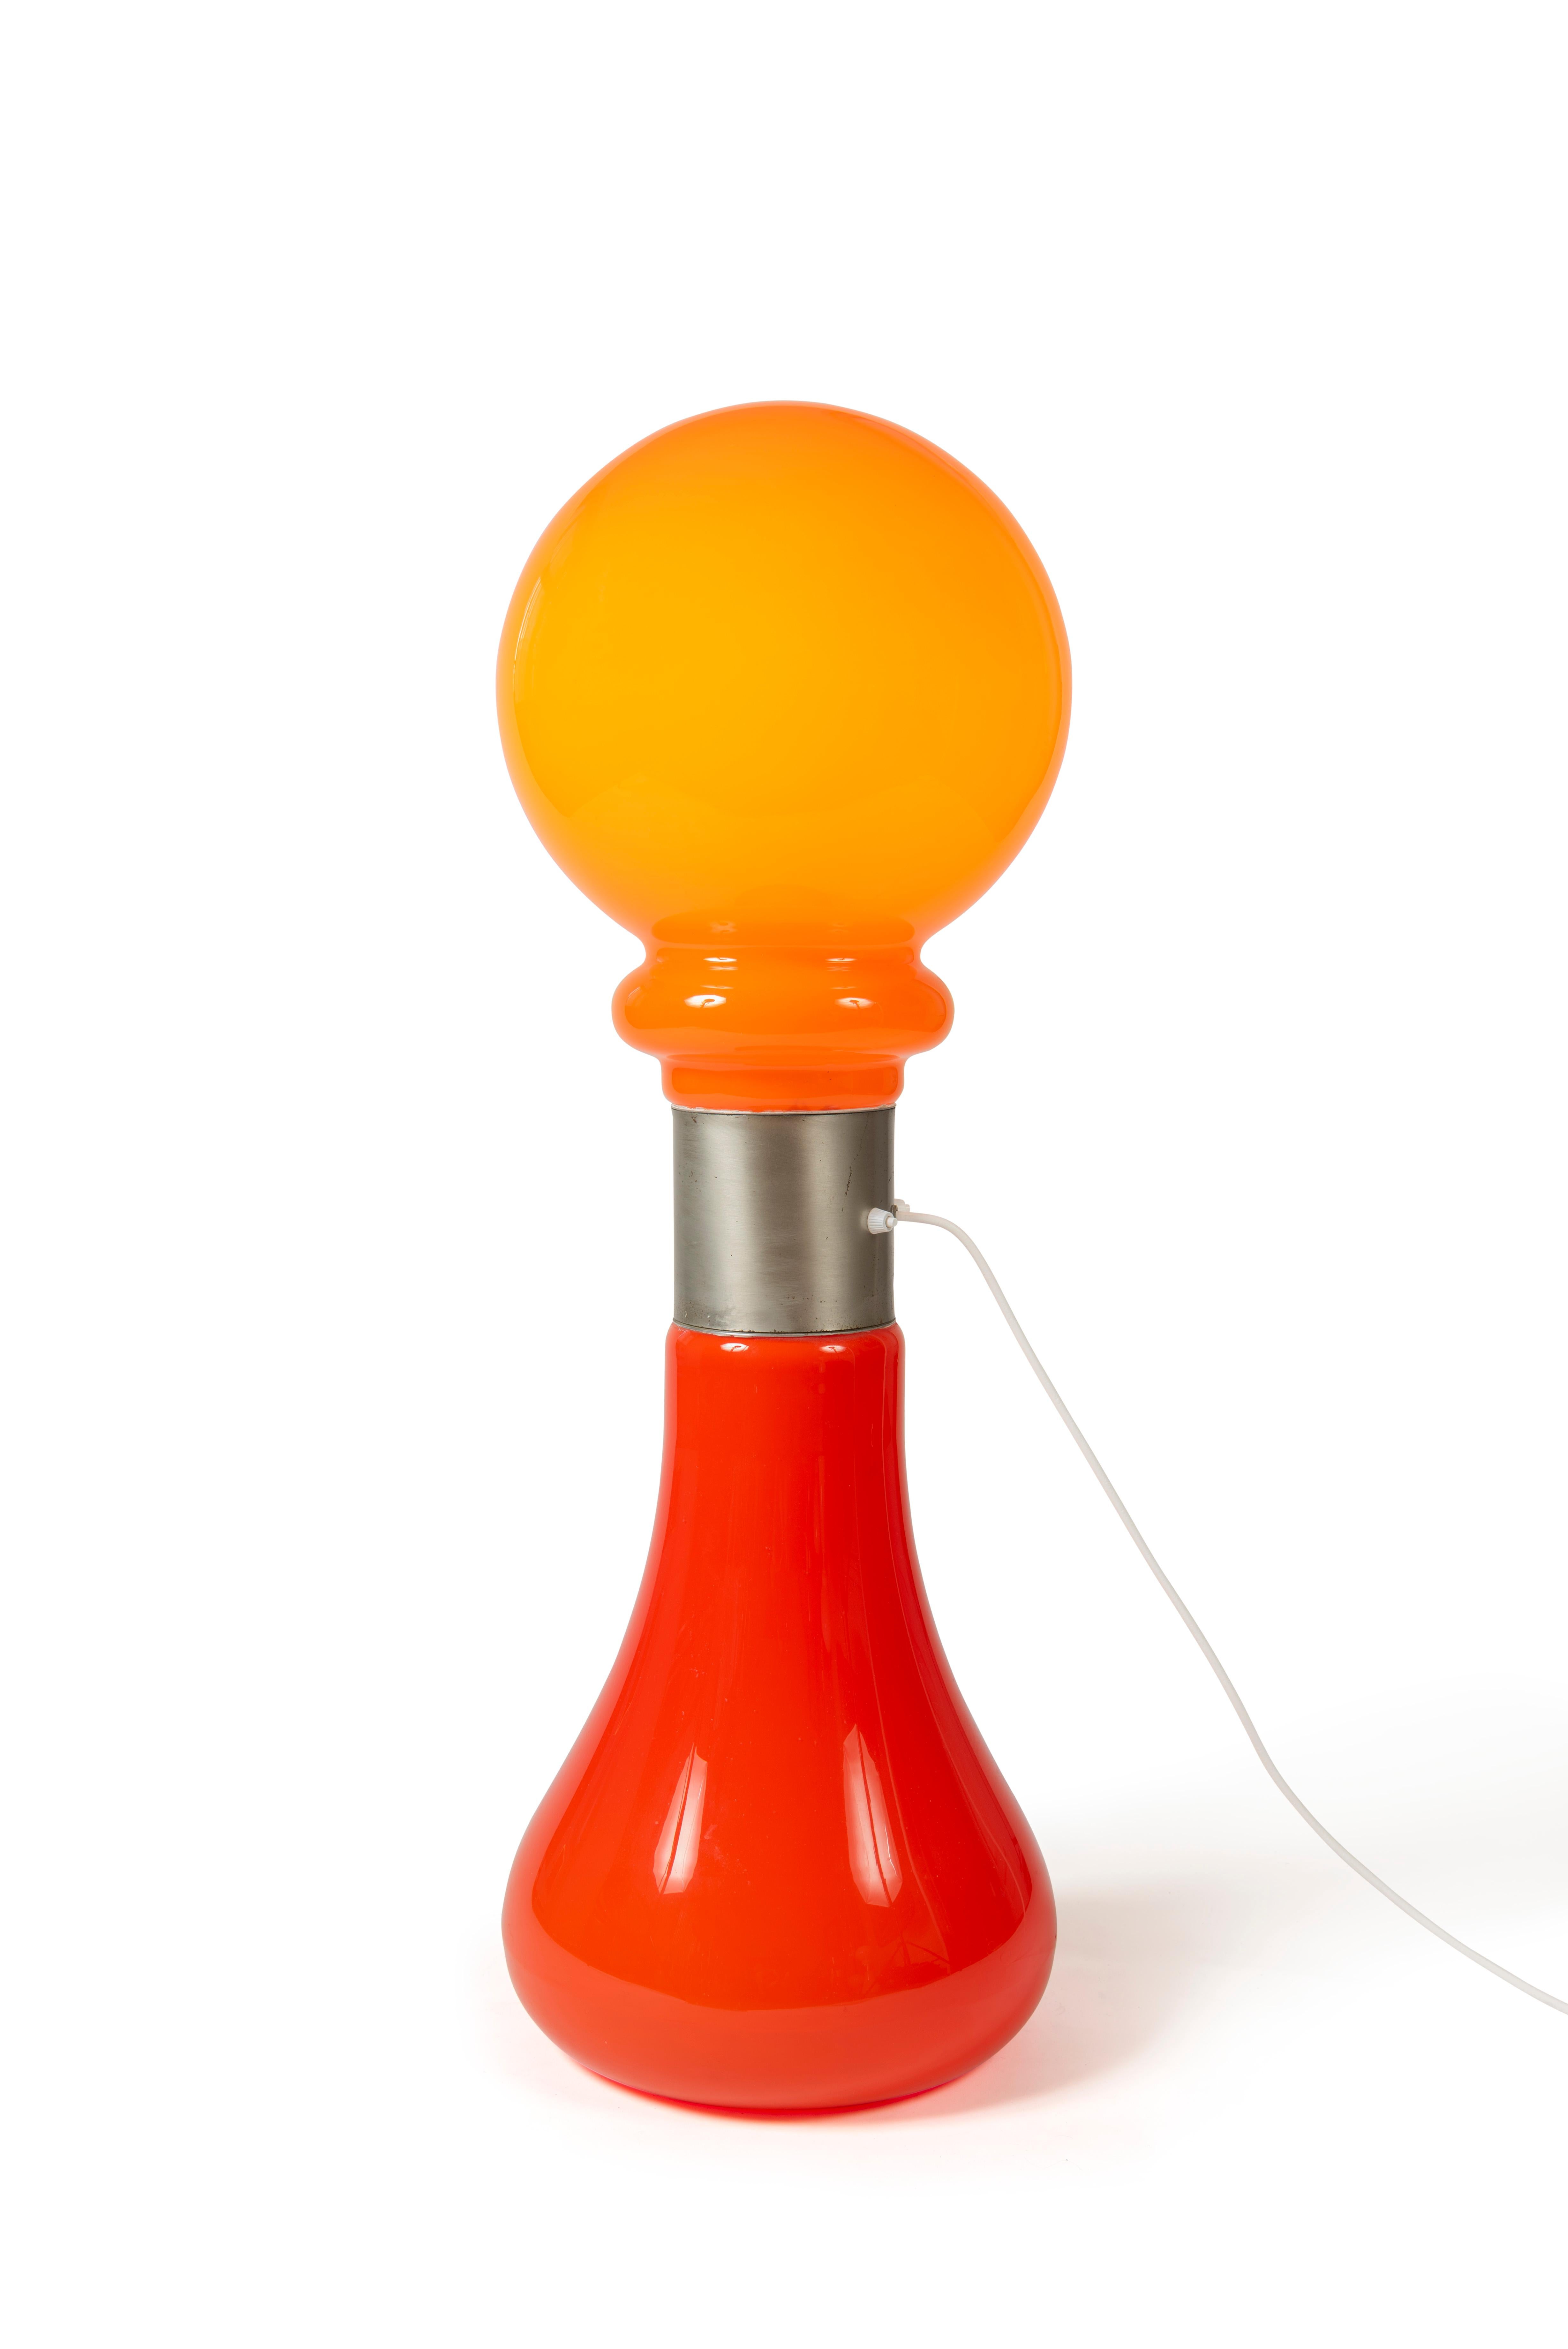 Lampadaire rouge en forme d'ampoule de Carlo Nason pour Mazzega, 1960.

Style 